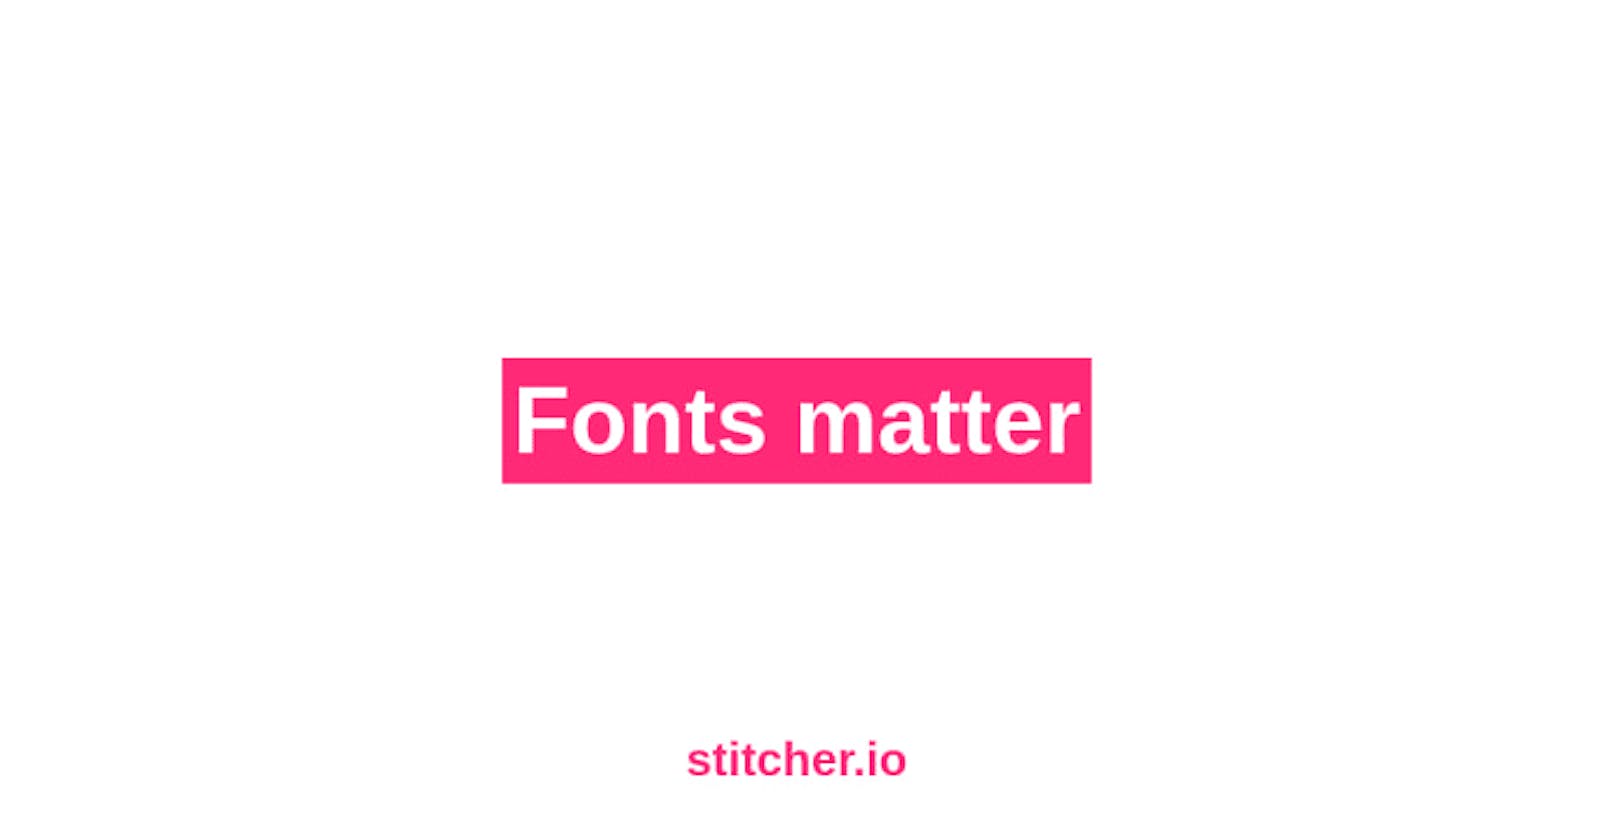 Fonts matter